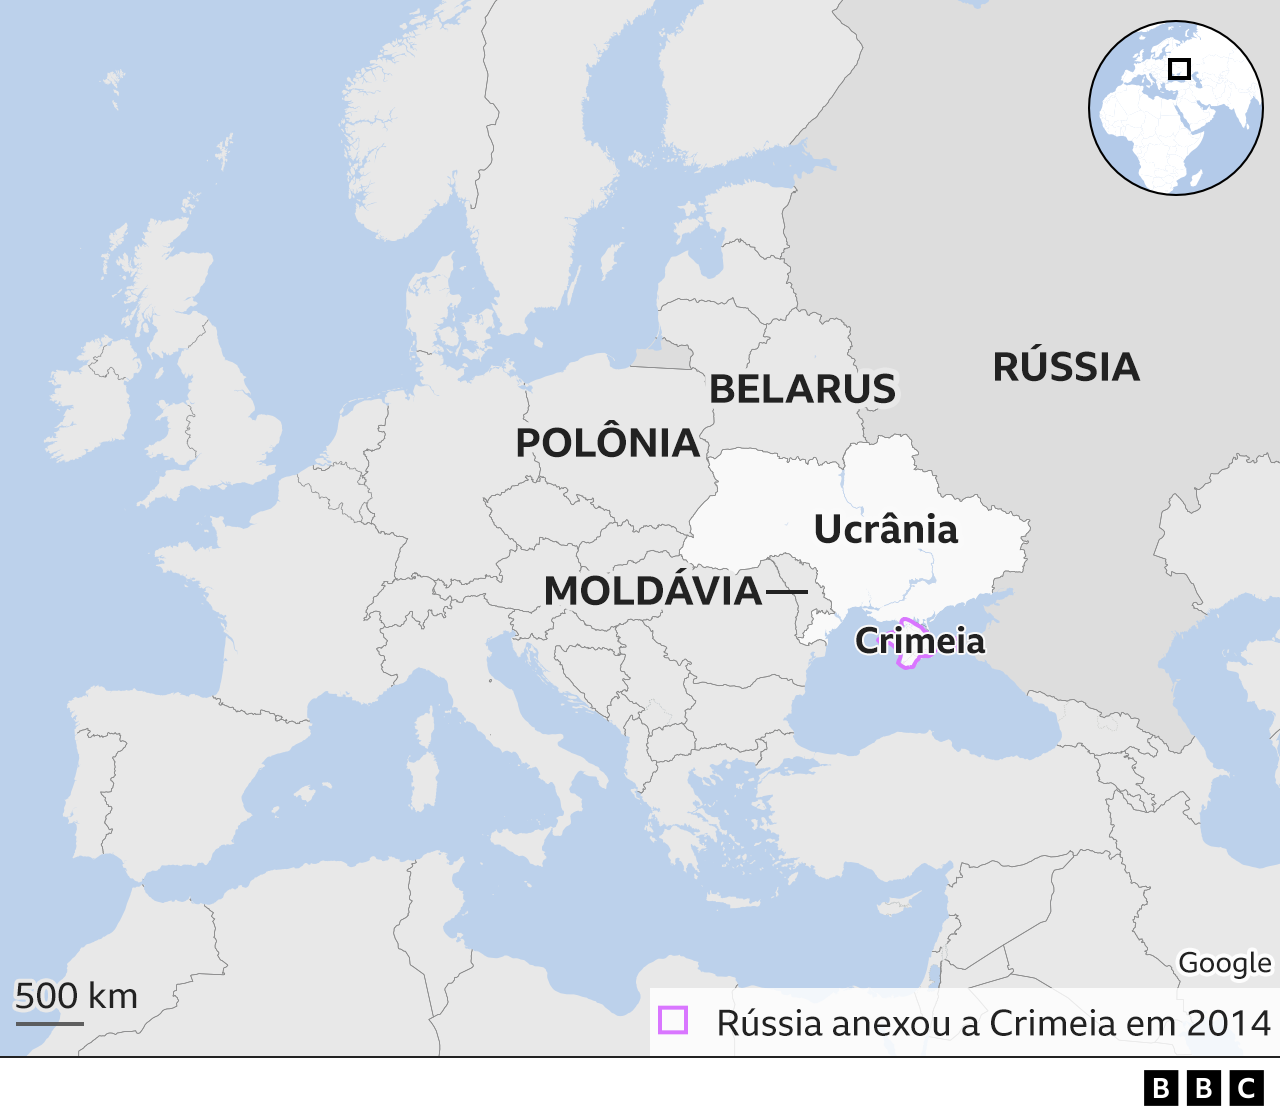 Mapa mostra onde fica a Ucrânia - no leste da Europa, entre a Rússia e a Polônia